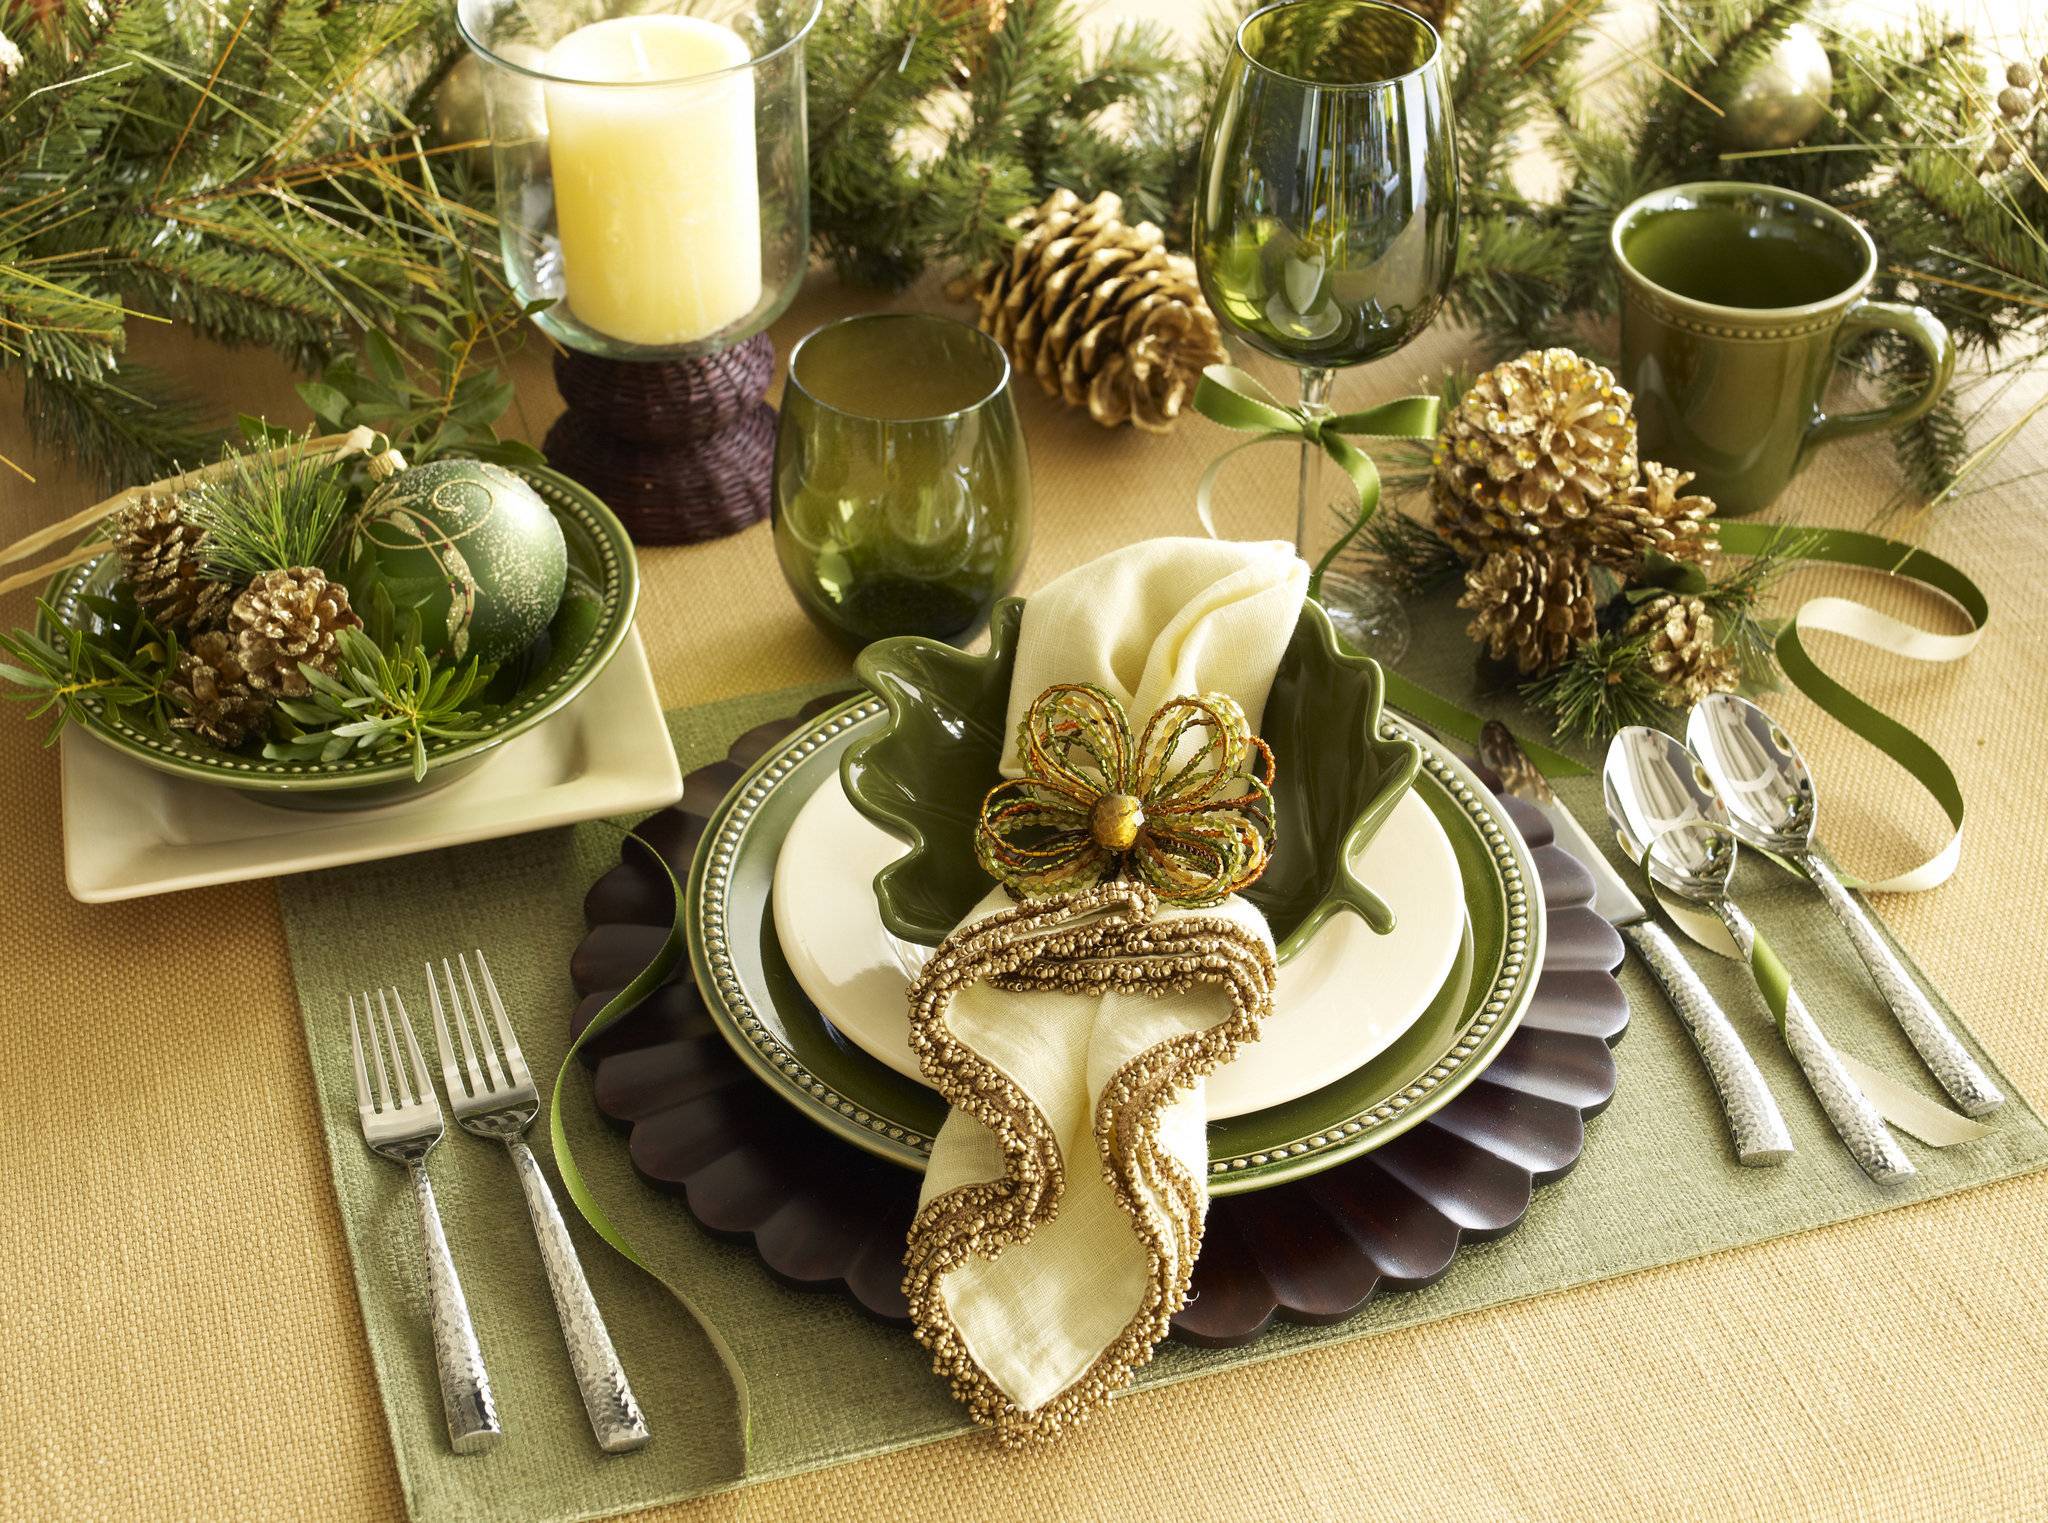 Сервируем новогодний стол: 6 шагов к празднику на вашем столе